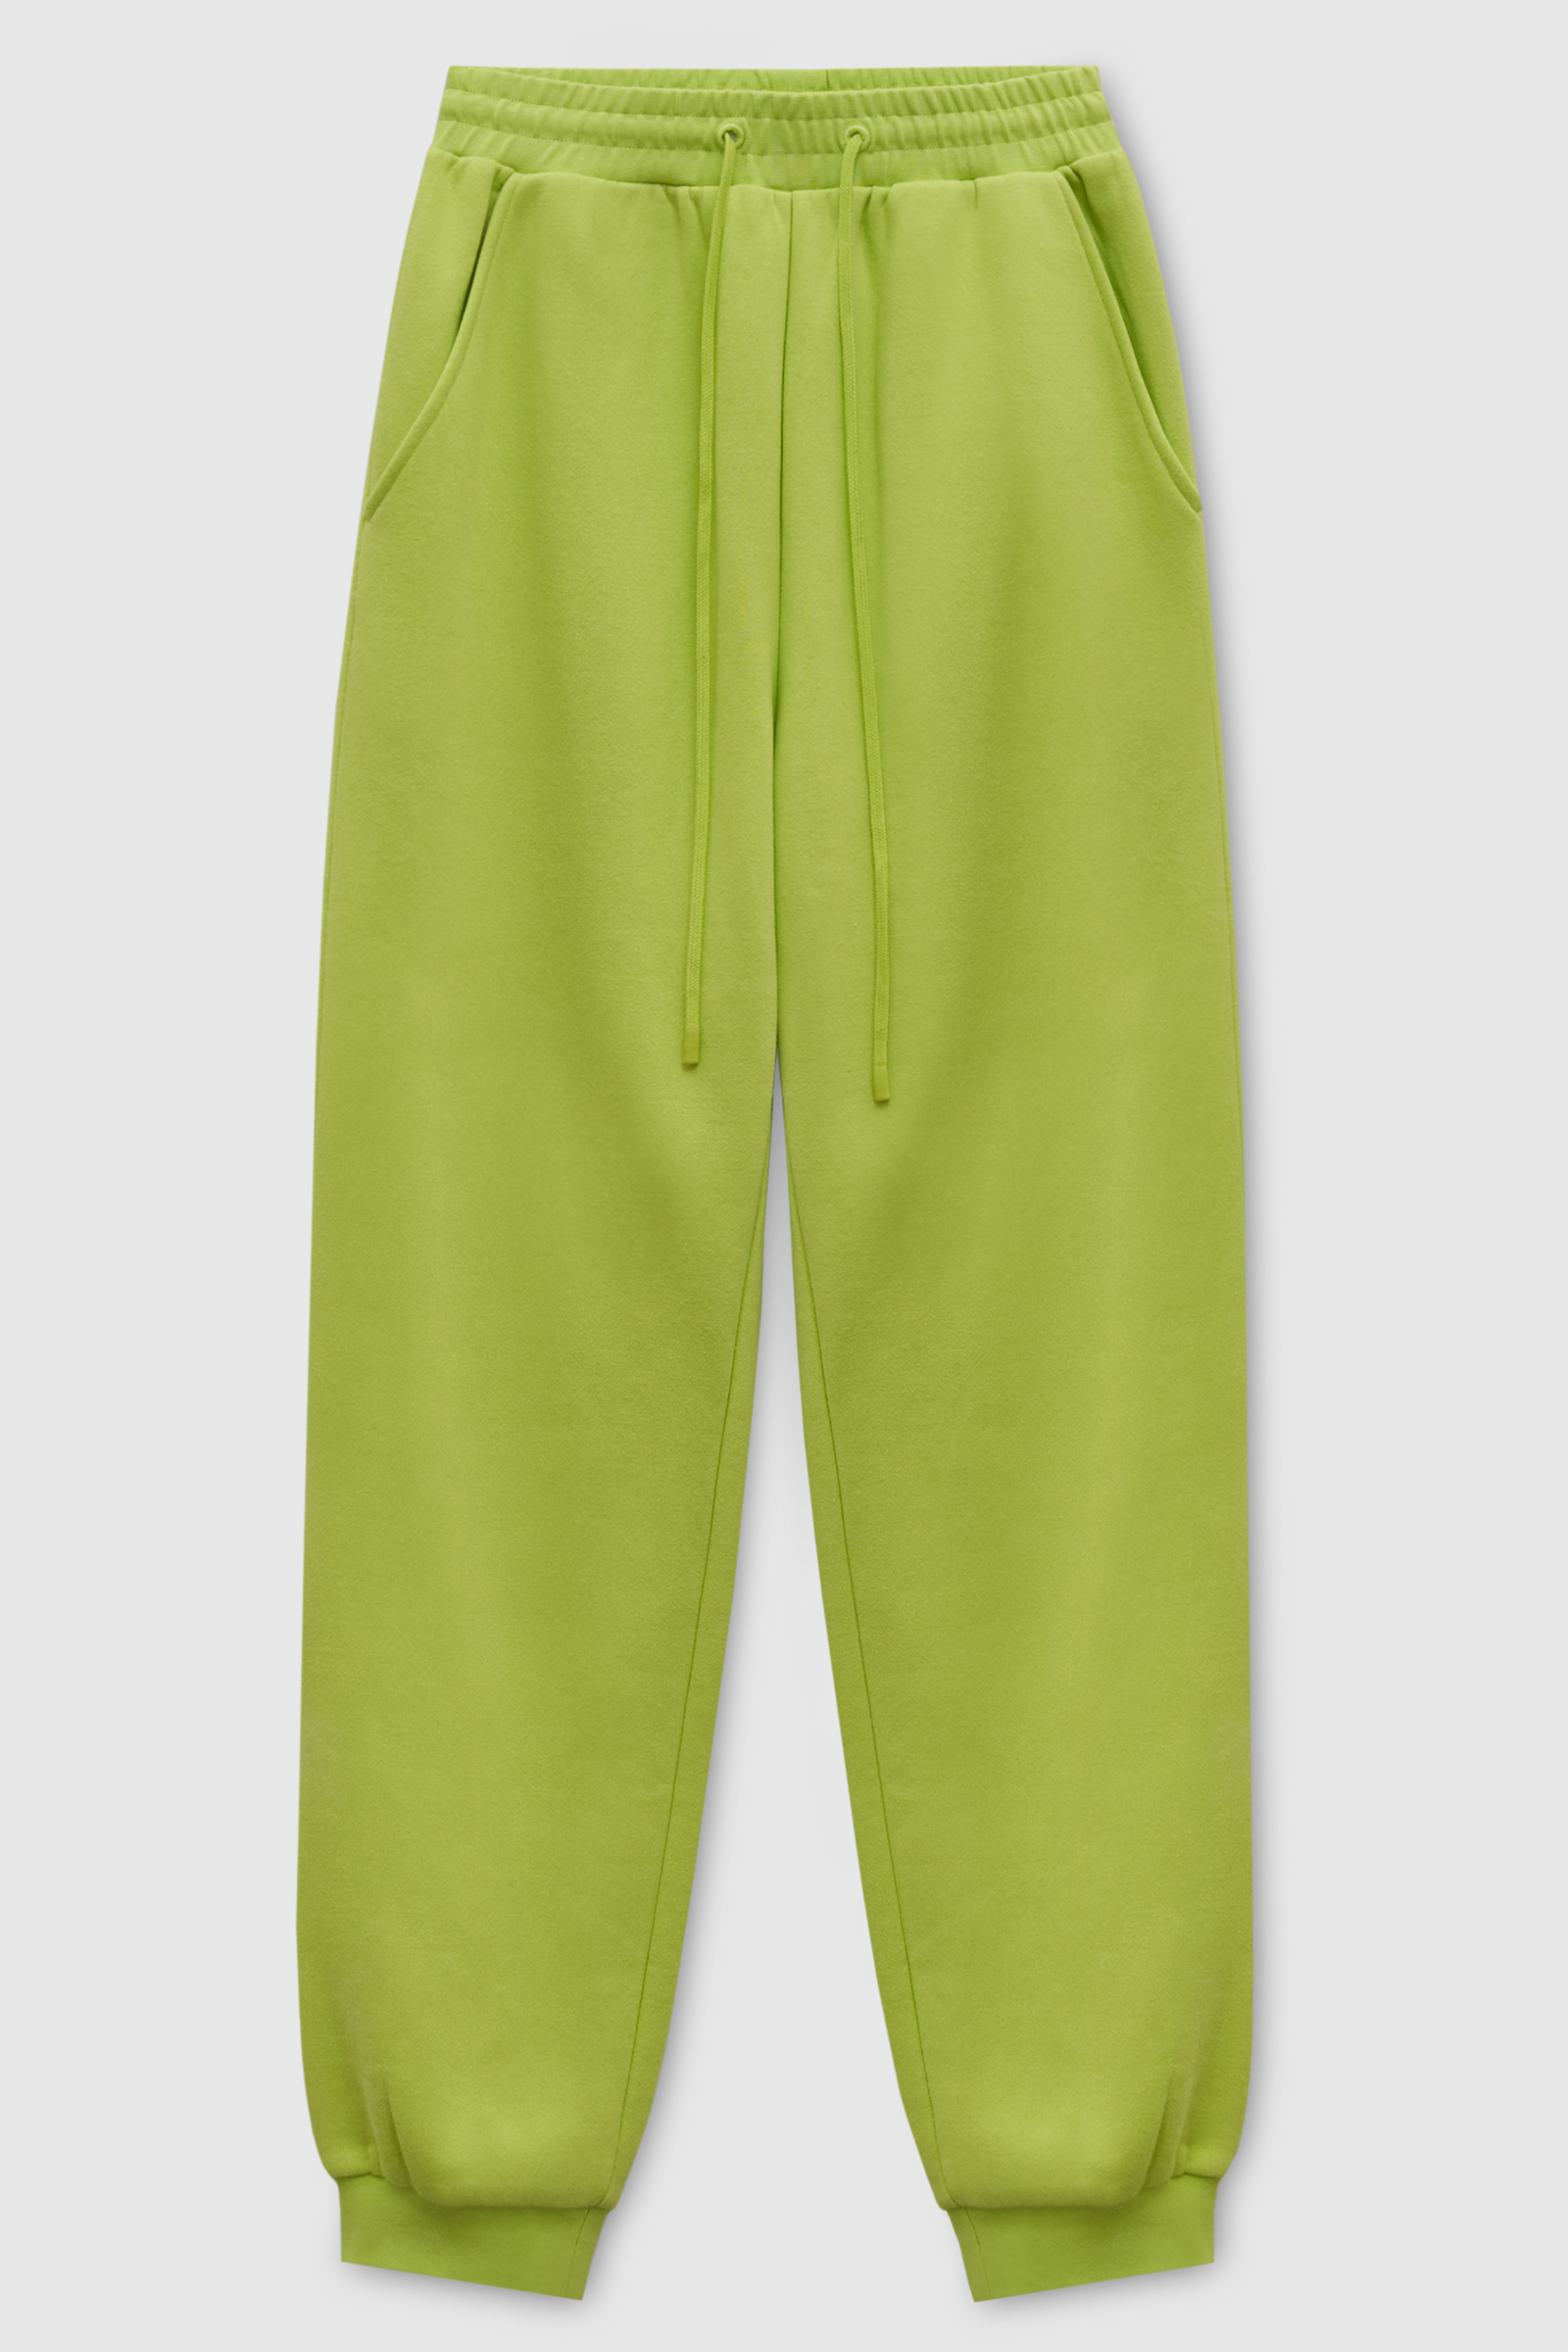 Спортивные брюки женские Finn Flare FAD110143 зеленые M